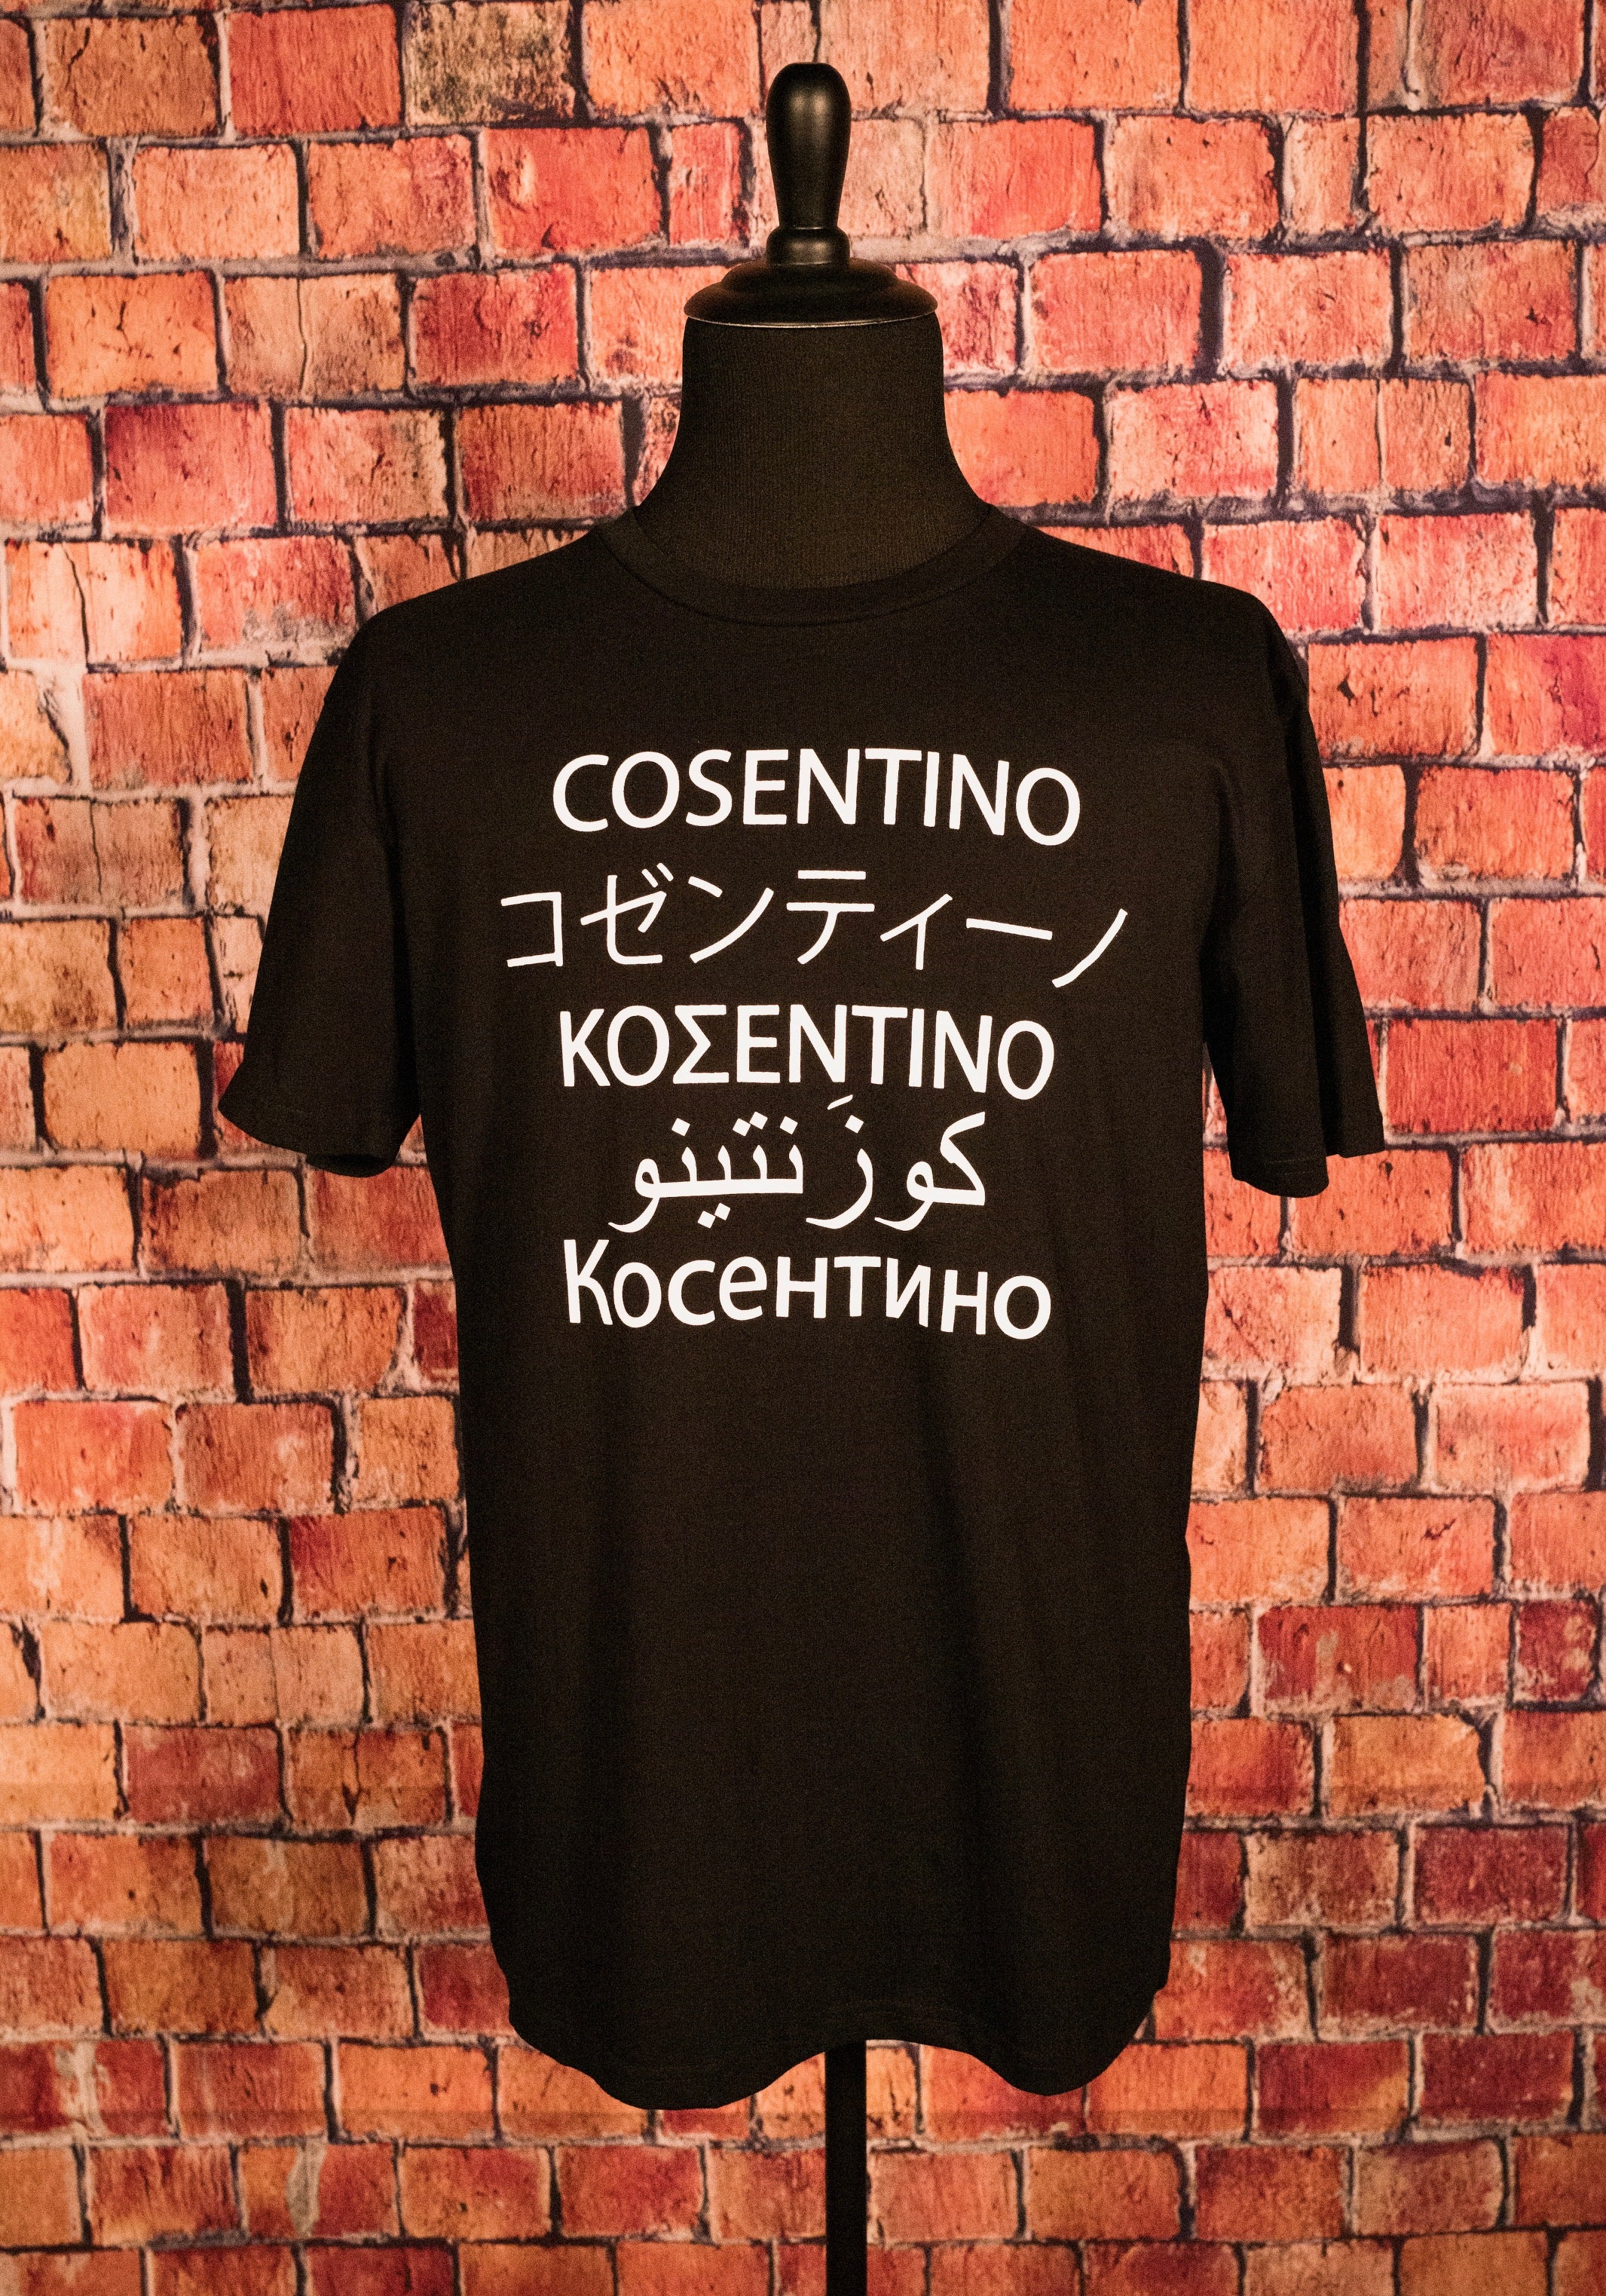 BRAND NEW - Cosentino Multi Language T-shirt